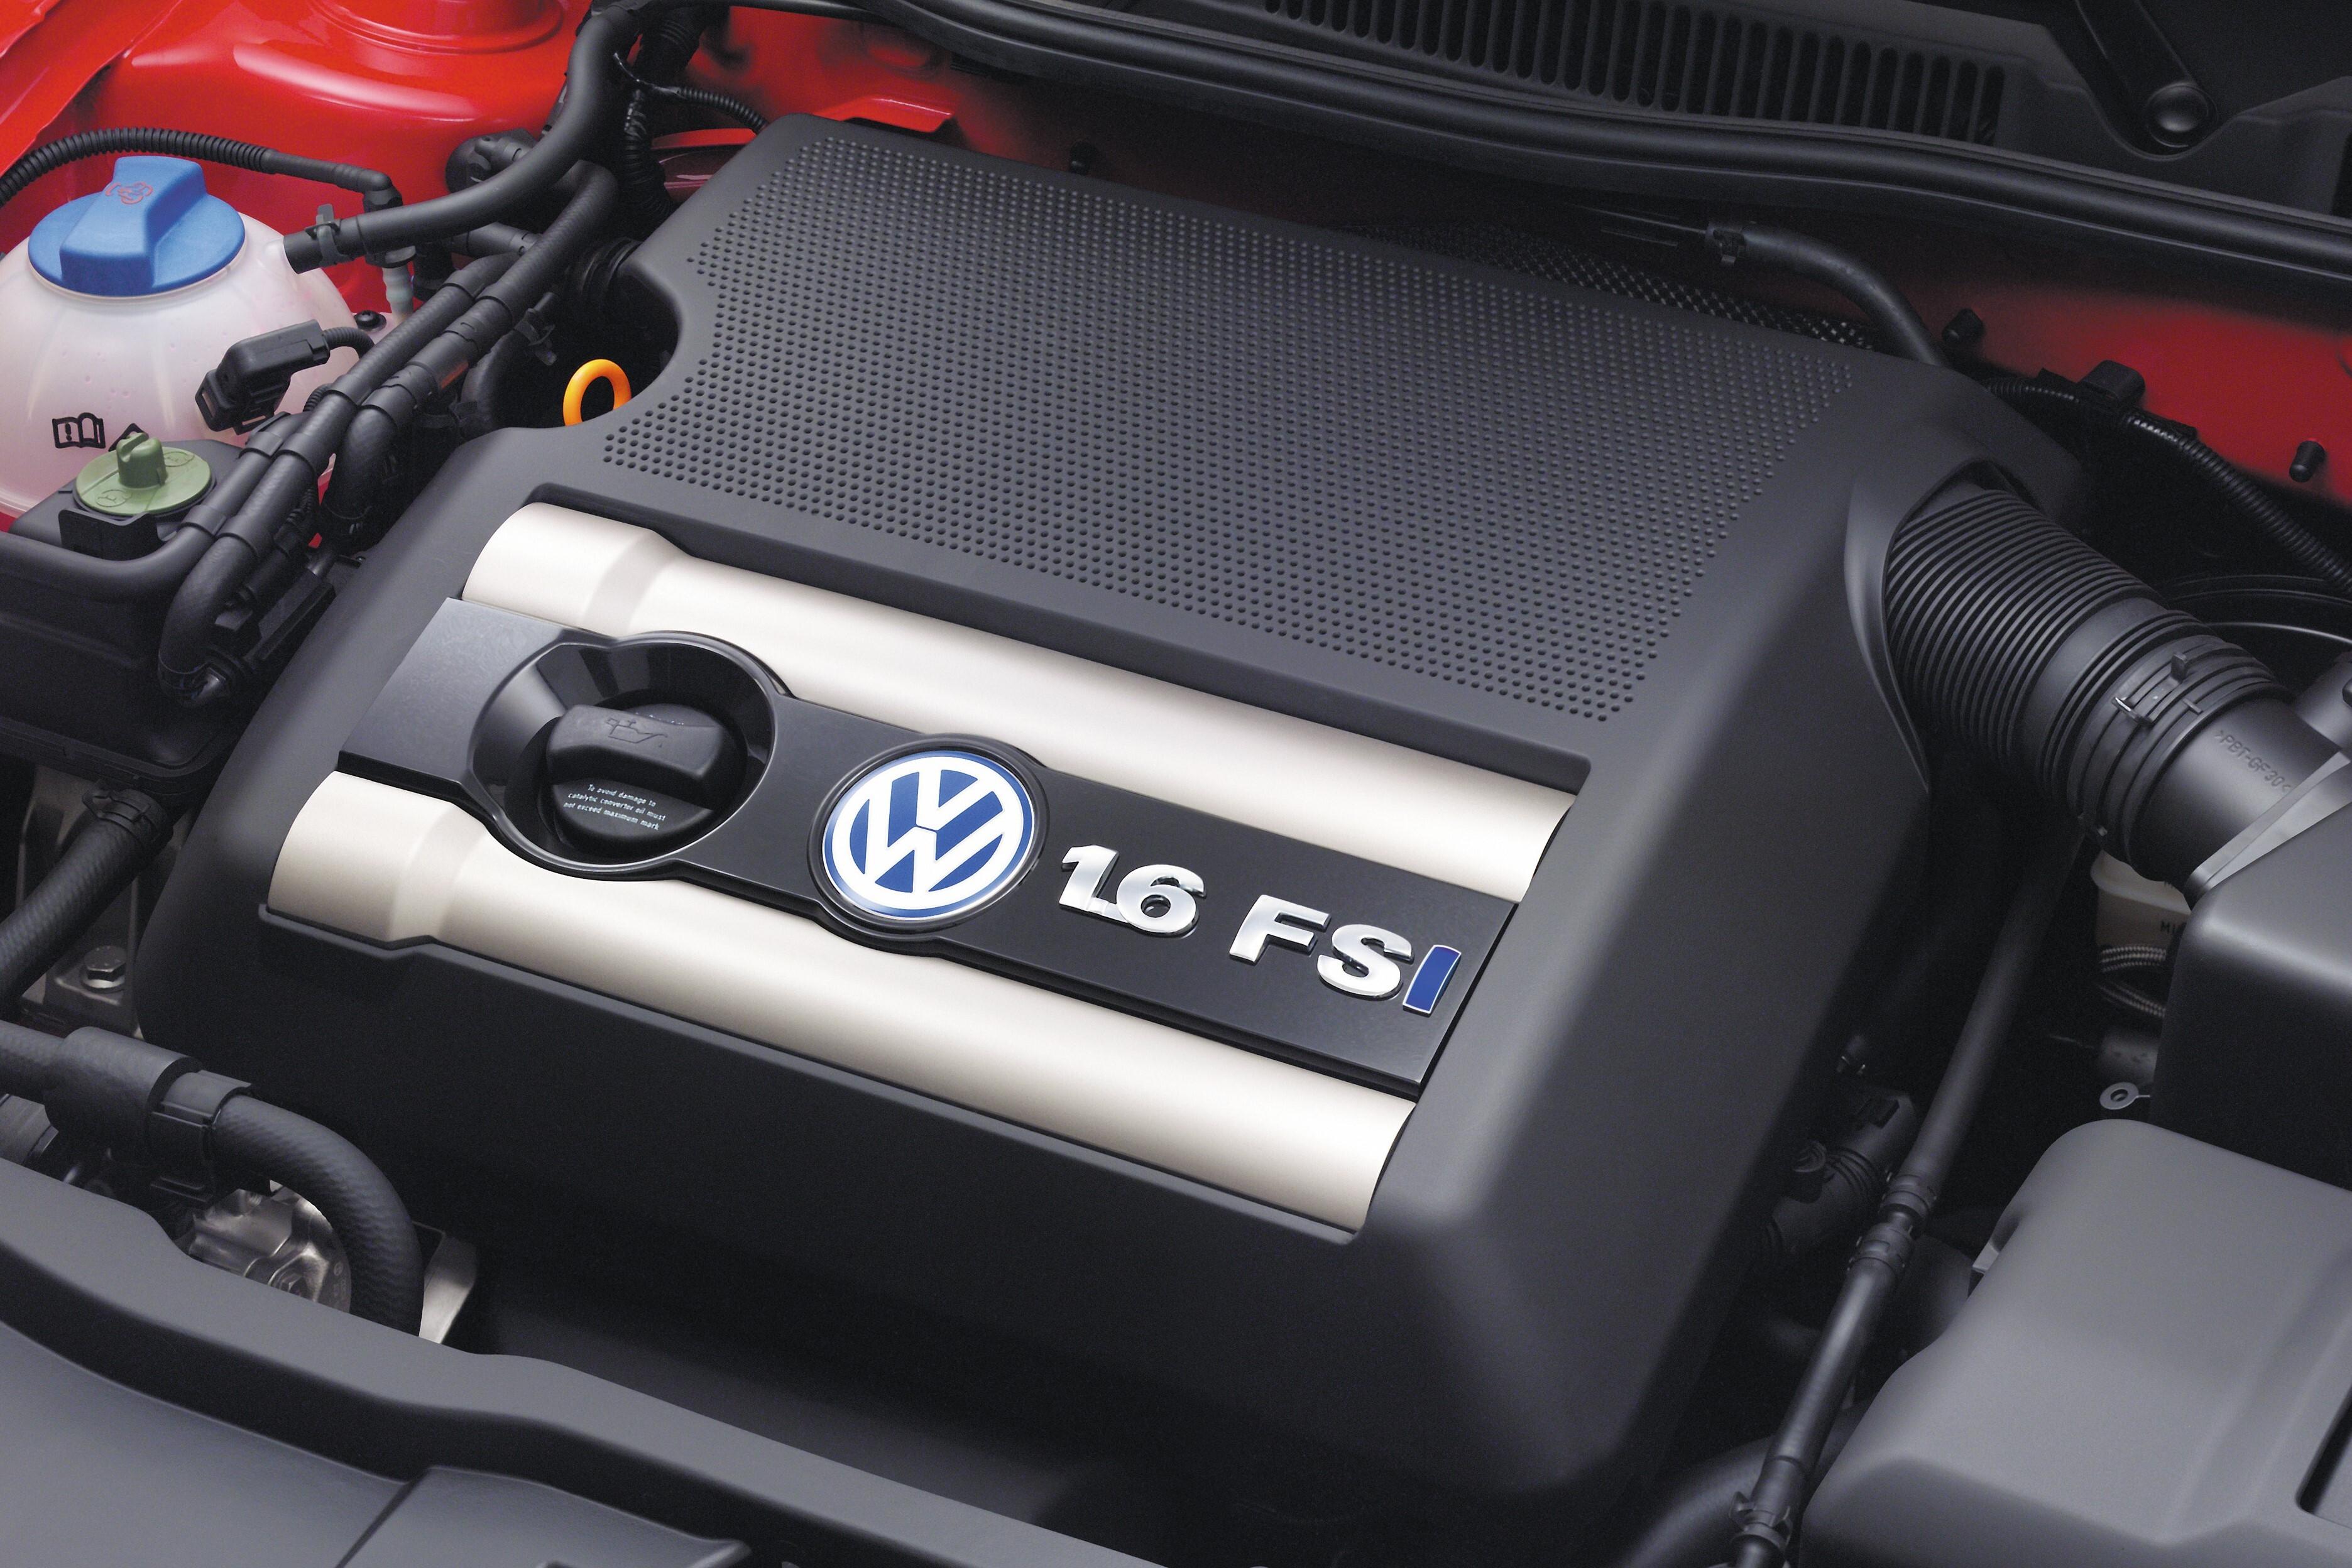 Volkswagen двигатели отзывы. Мотор Фольксваген гольф 4 1.6. Volkswagen Golf 4 1.6 мотор. Гольф 4 1.6 16v FSI. Мотор гольф 4 1.6 16v.